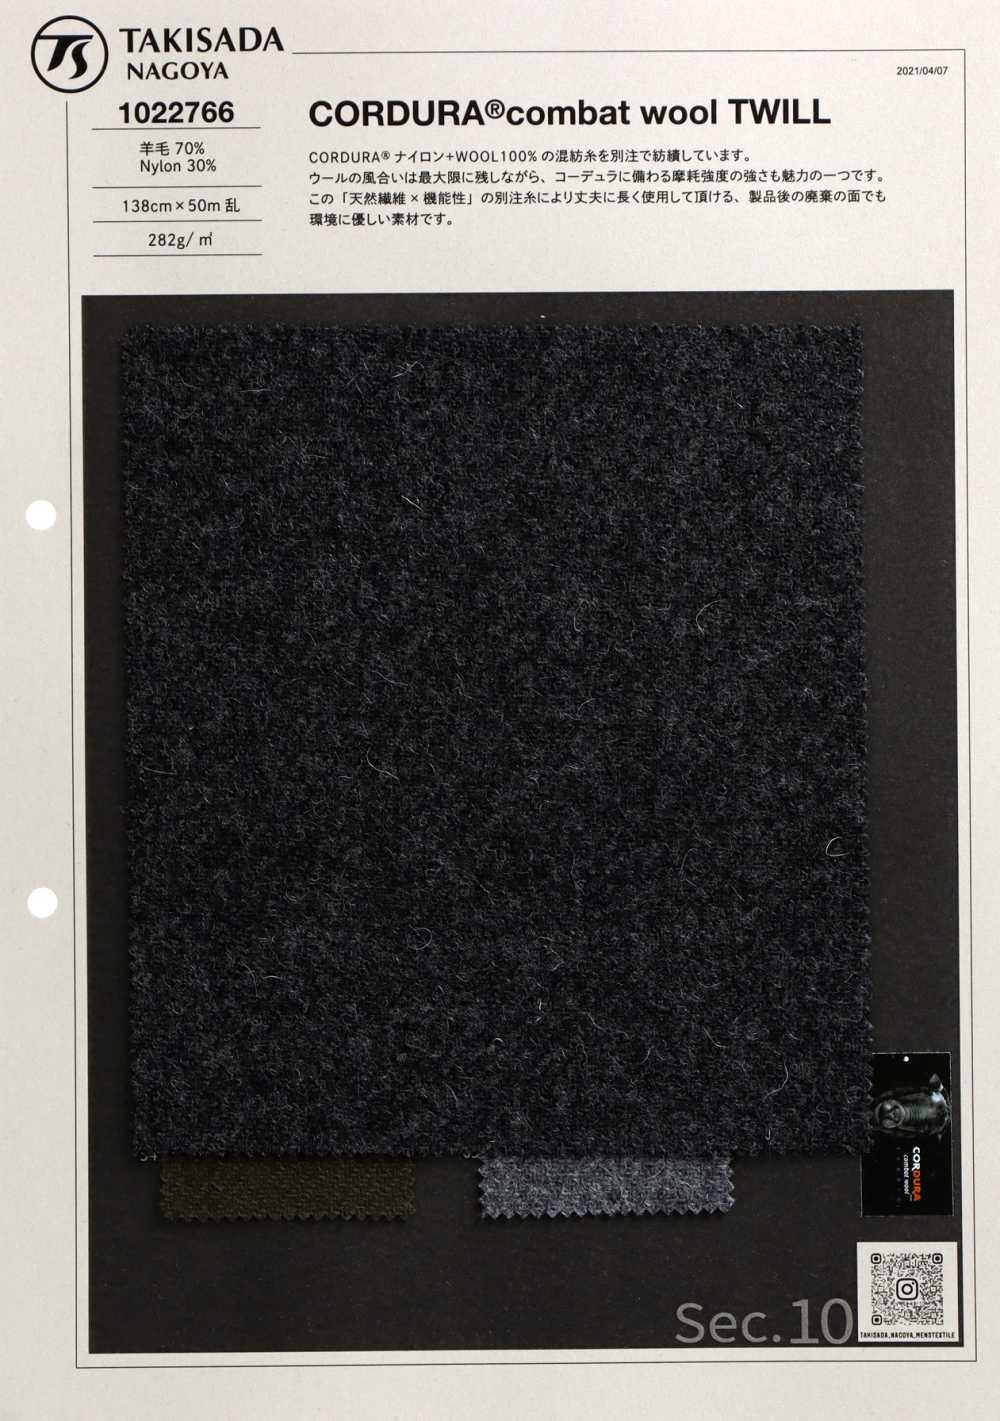 1022766 CORDURA Combat Wool Twill[Textile / Fabric] Takisada Nagoya